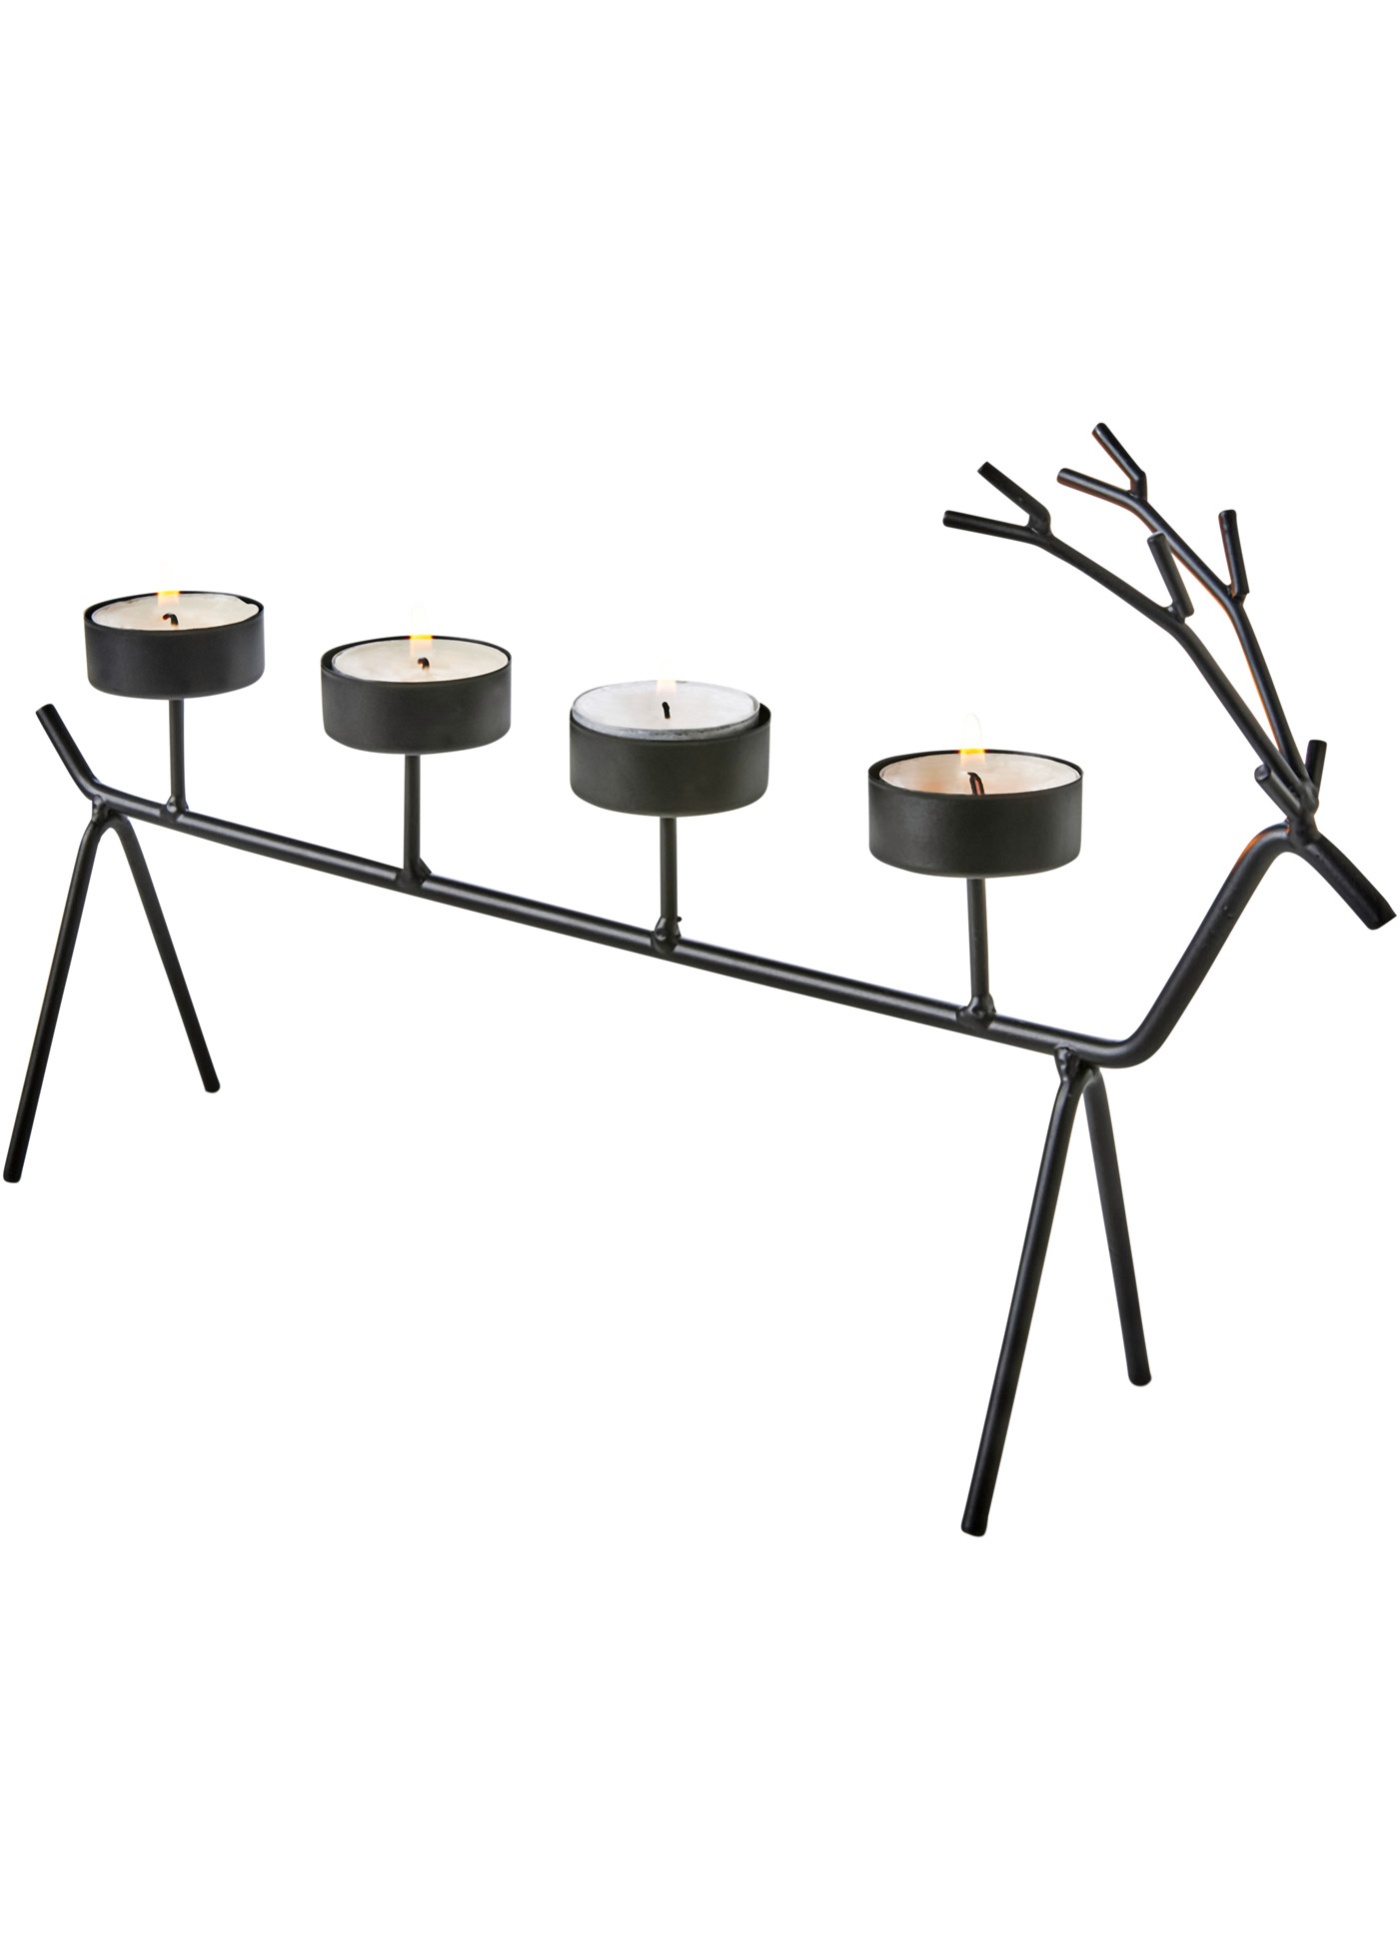 Moderner und dekorativer Kerzenhalter für die Weihnachtszeit. (96016581) in schwarz